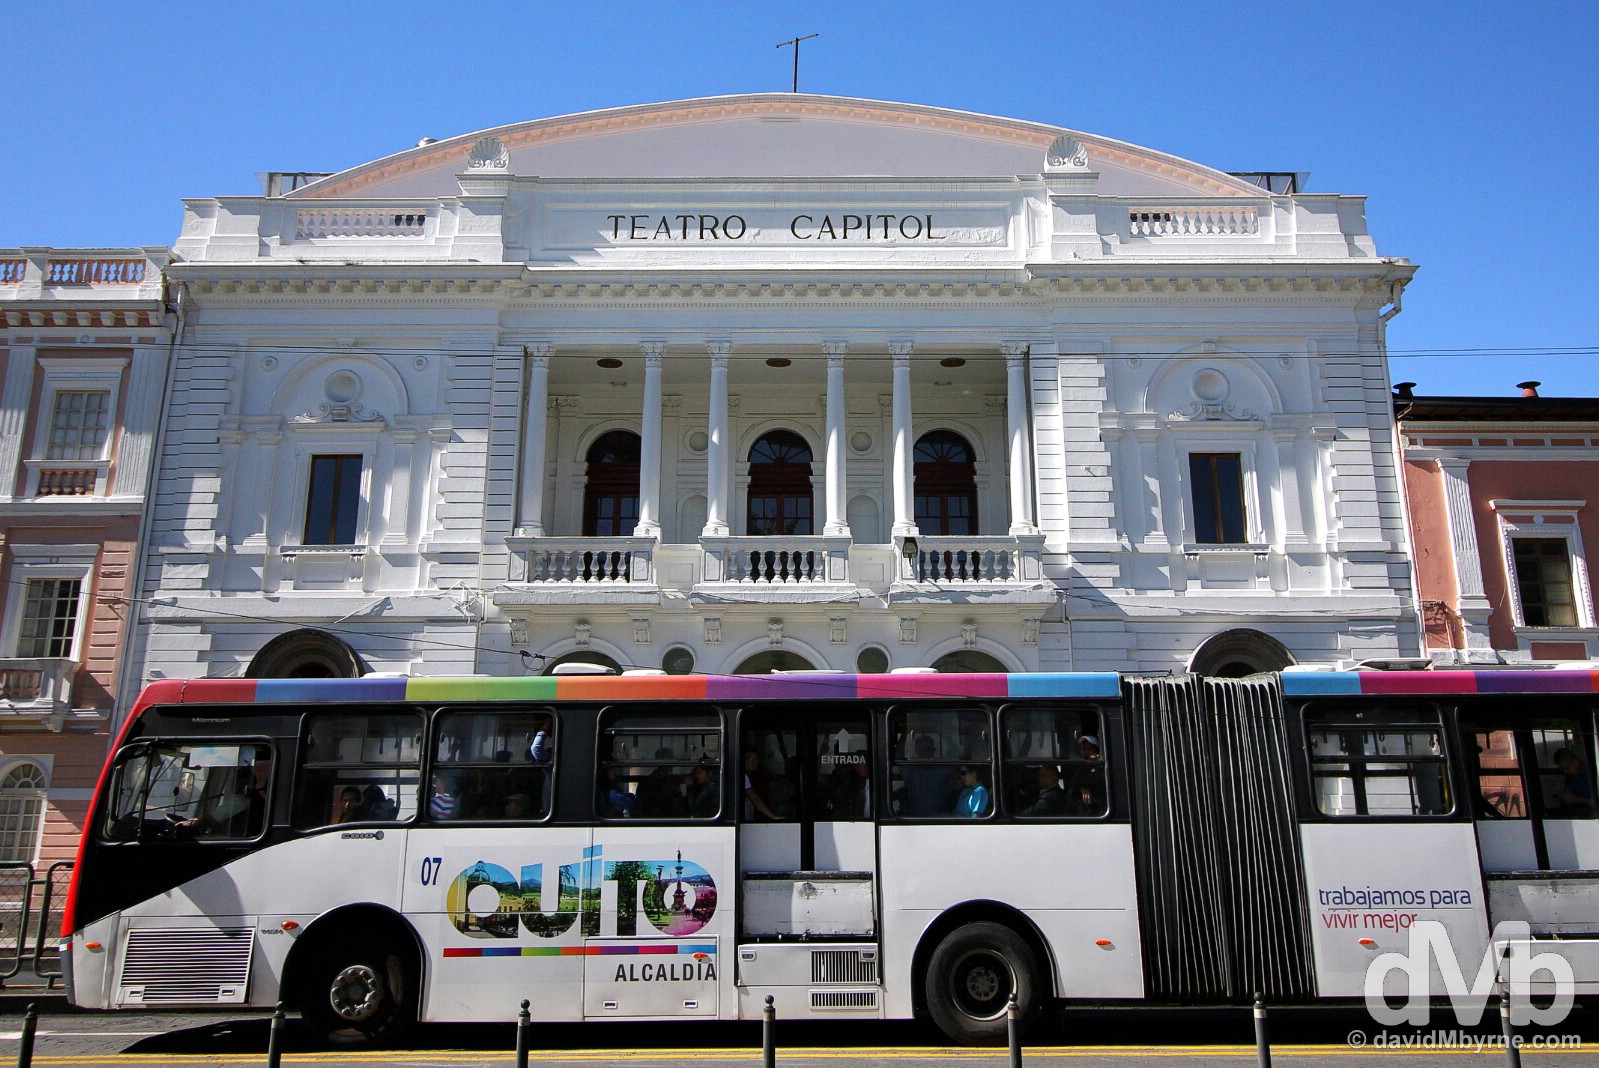 Teatro Capital, Avenida Gran Colombia, Quito Ecuador. July 3, 2105.